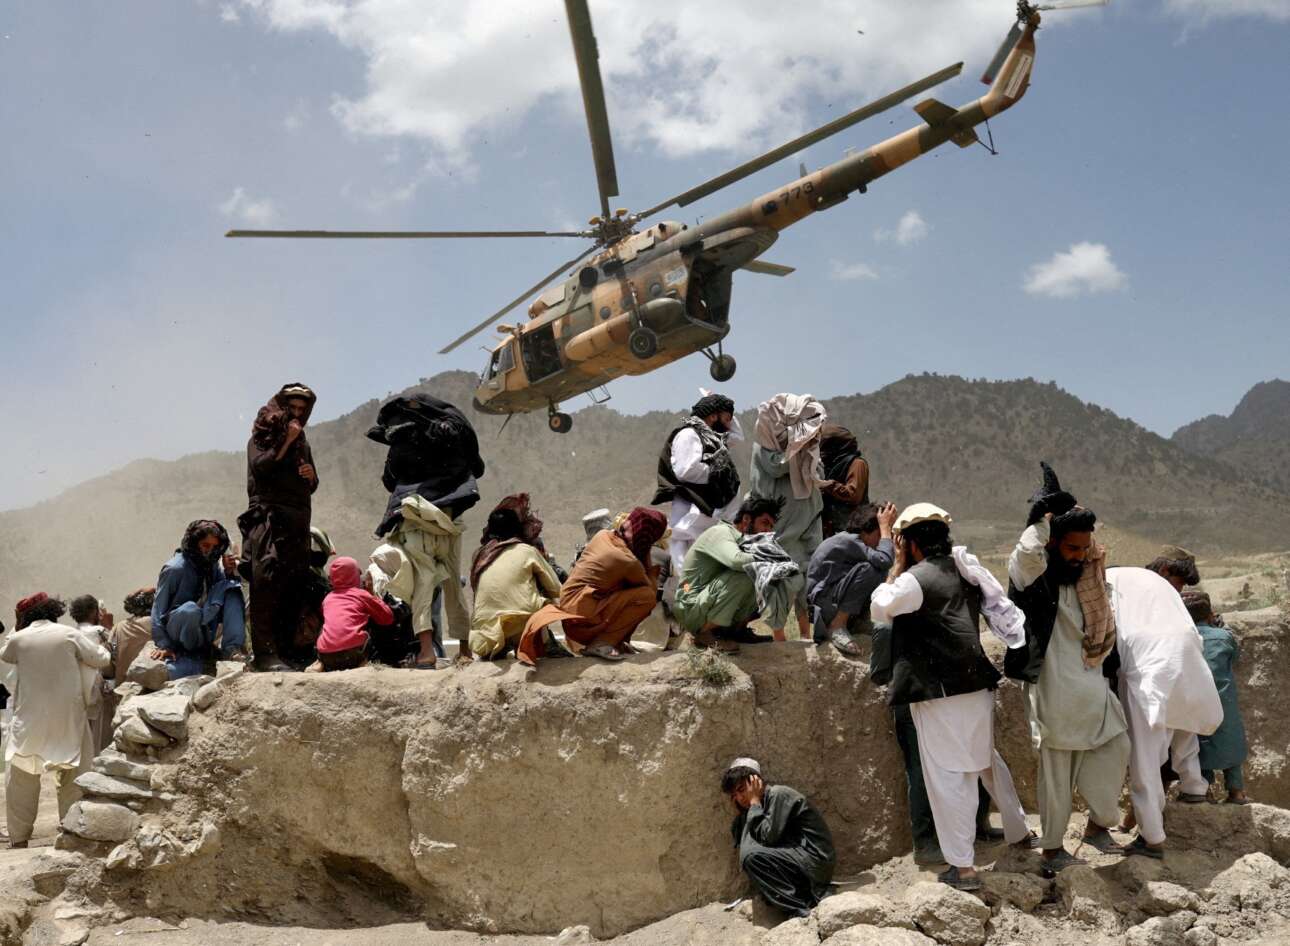 Τρόμος, θρήνος και απόγνωση στις σεισμόπληκτες επαρχίες του Αφγανιστάν – εδώ εικονίζεται ένα ελικόπτερο των Ταλιμπάν που μόλις ξεφόρτωσε τα απολύτως αναγκαία για την επιβίωση των χωρικών και απογειώνεται για να ξαναφορτώσει και να επιστρέψει